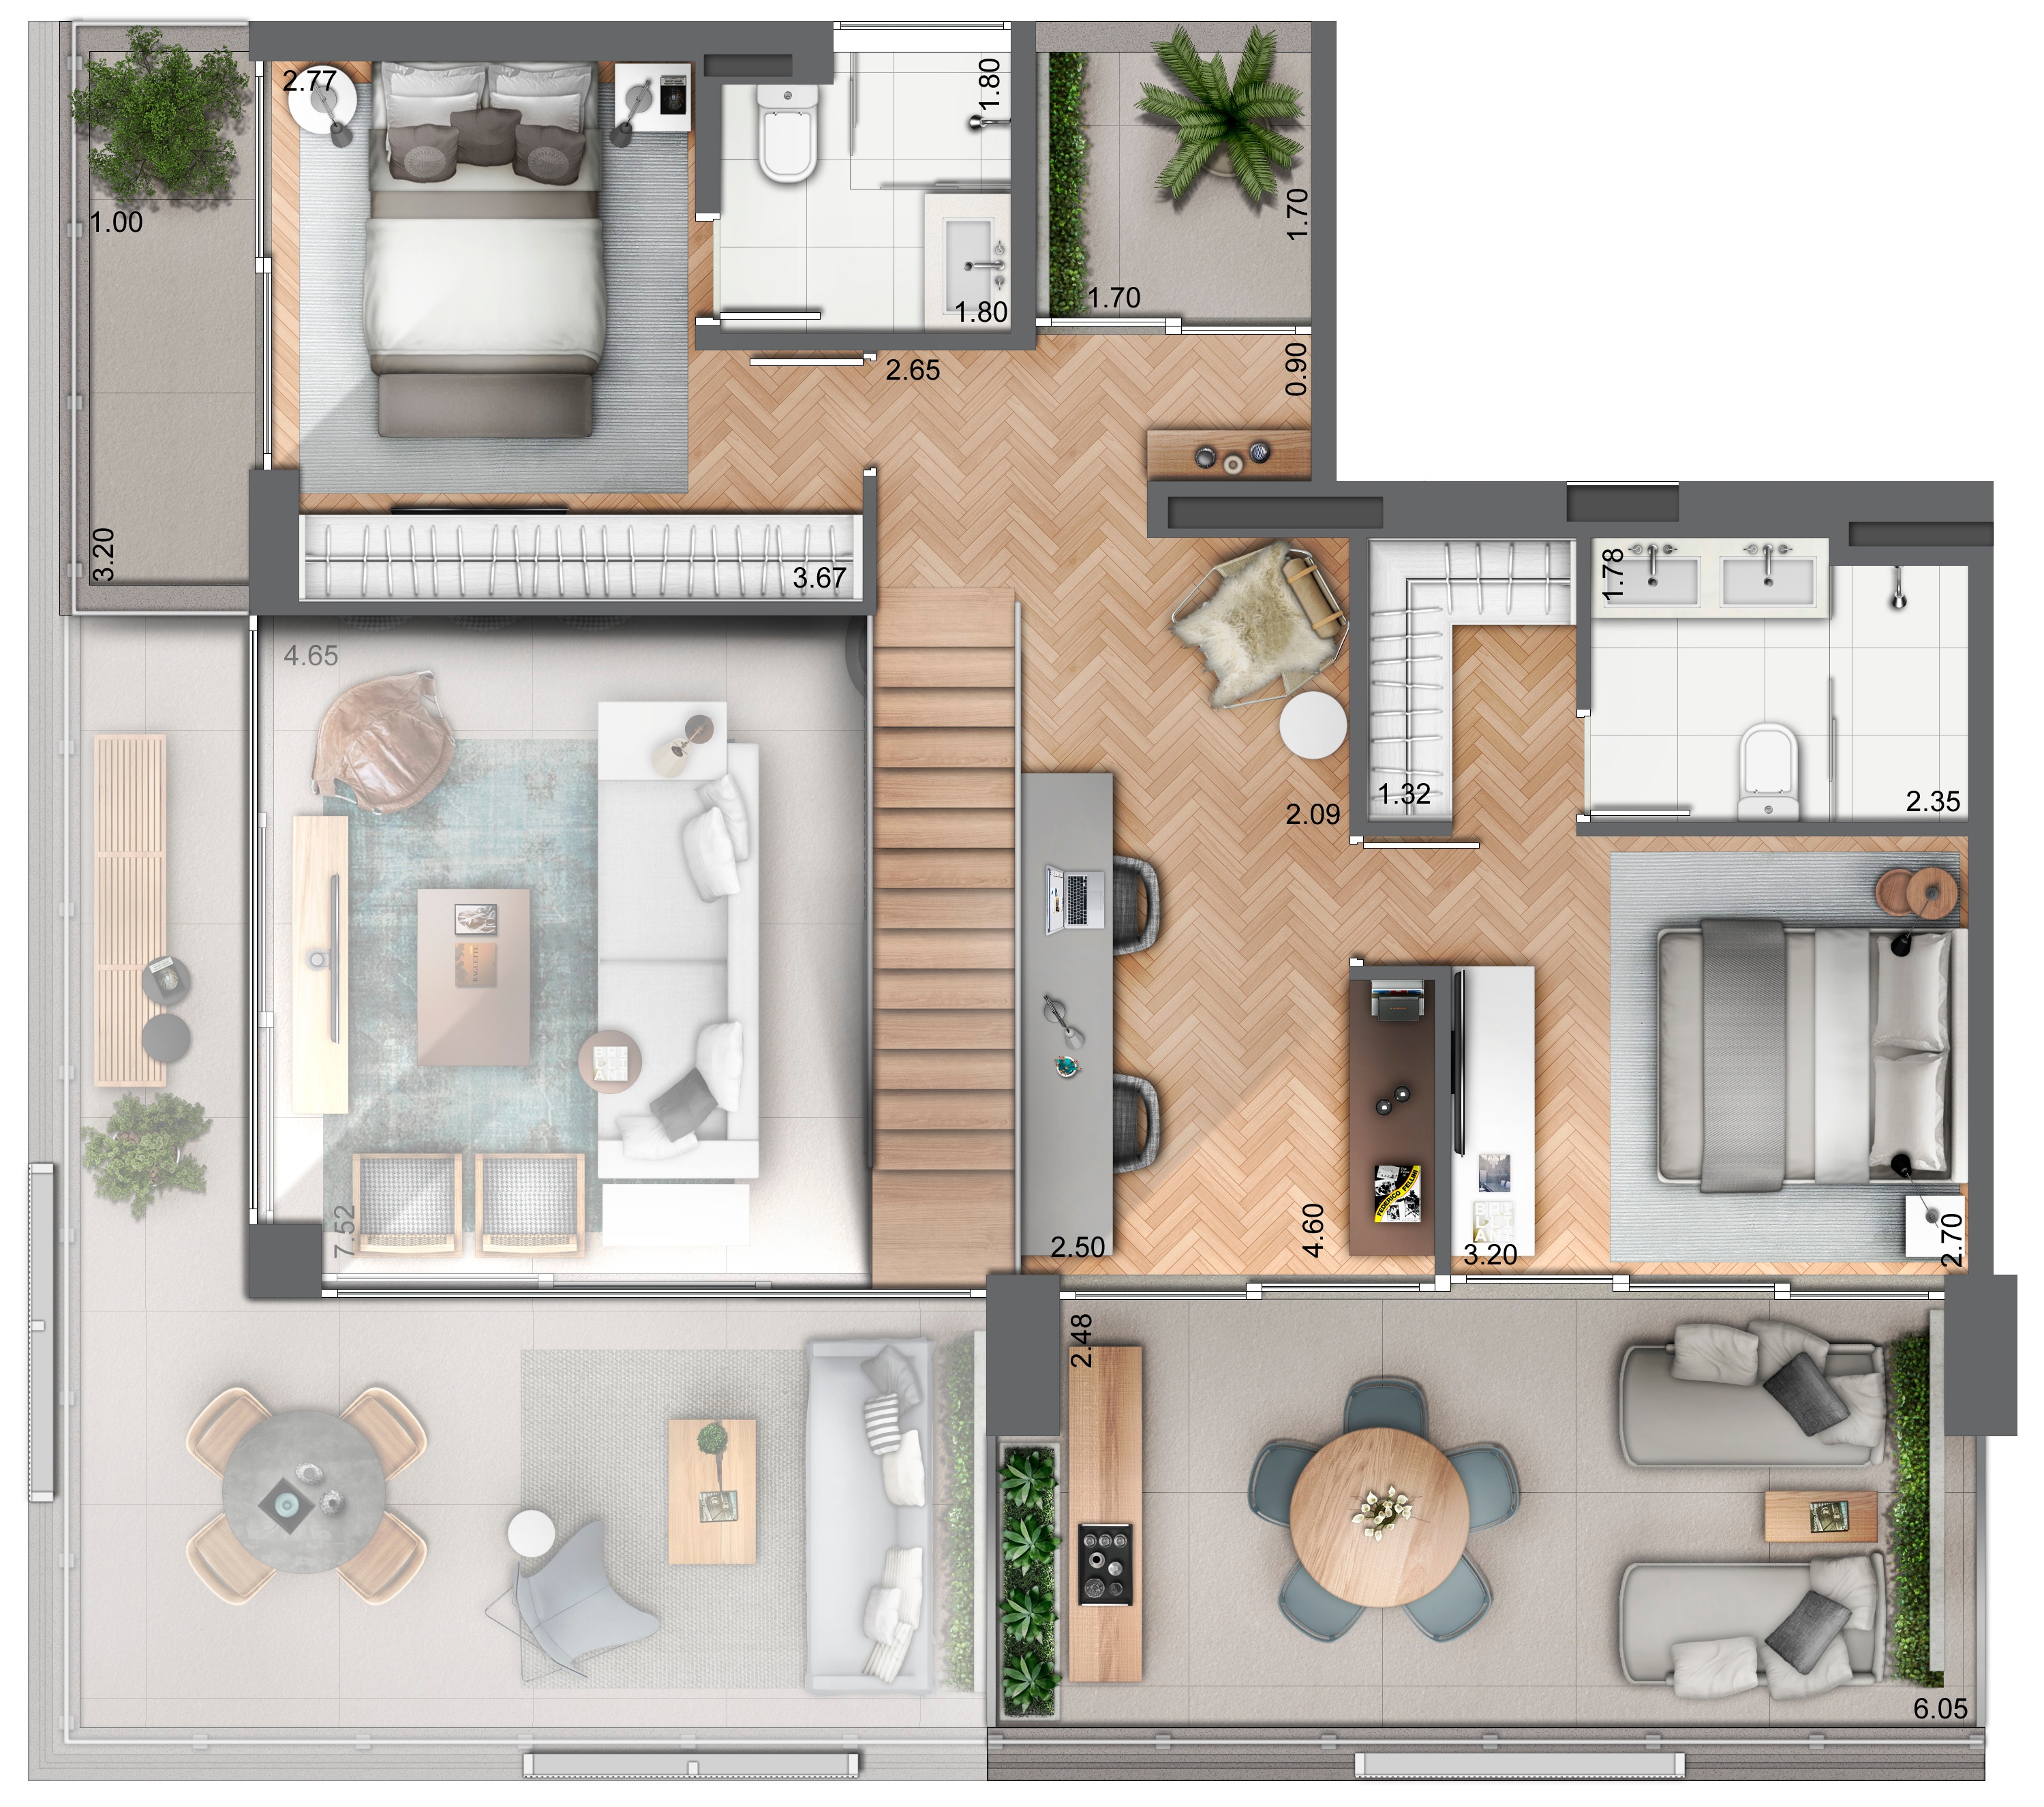 Duplex 139 m² - Piso superior (2 suítes)